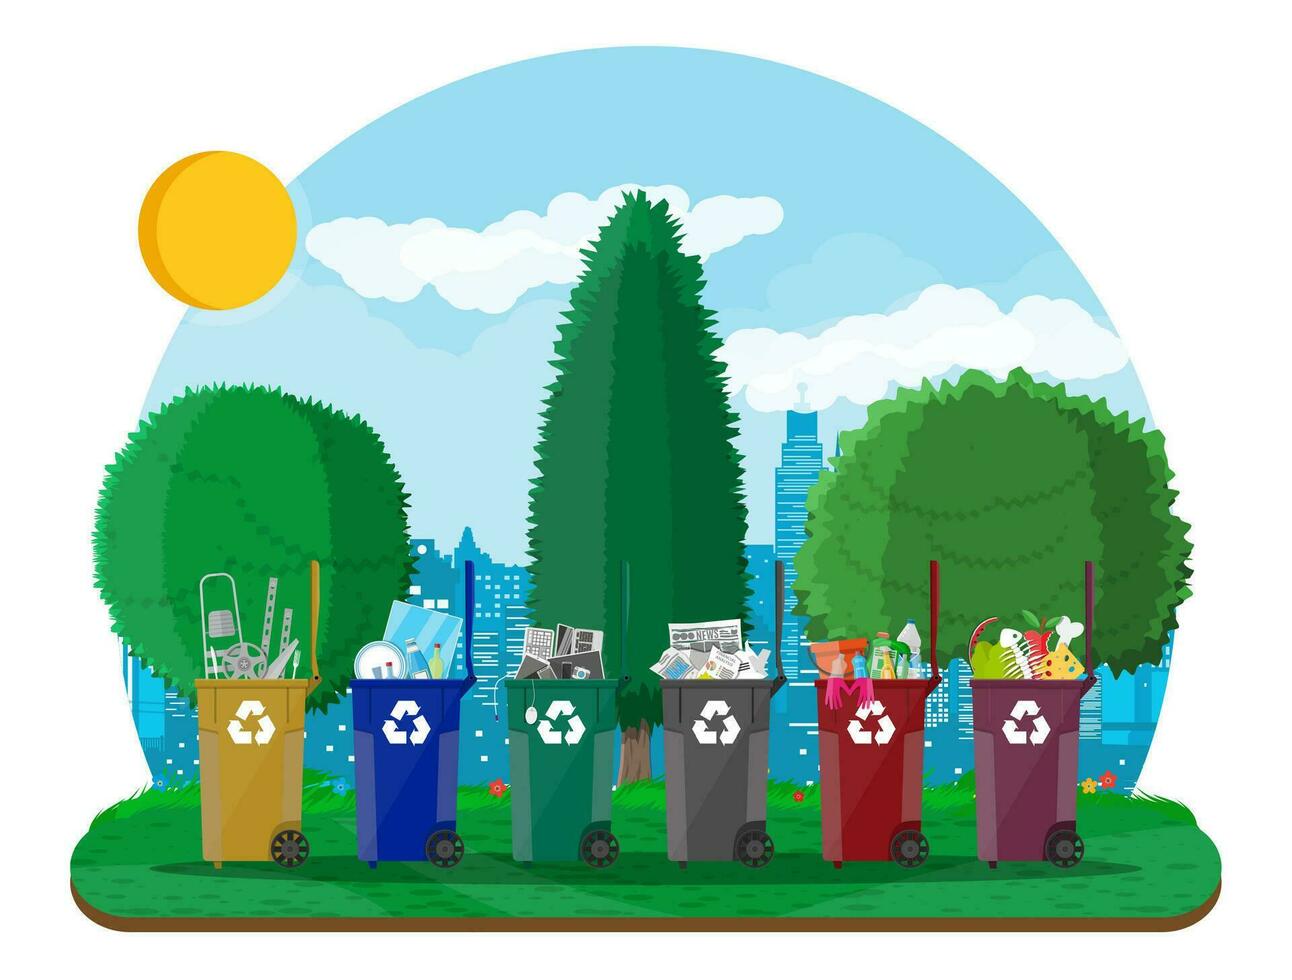 écologique mode de vie concept. pouvez récipient, sac et seau pour ordures. recyclage et utilisation équipement, poubelle ségrégation. Urbain paysage urbain avec des arbres. vert ville. vecteur illustration plat style